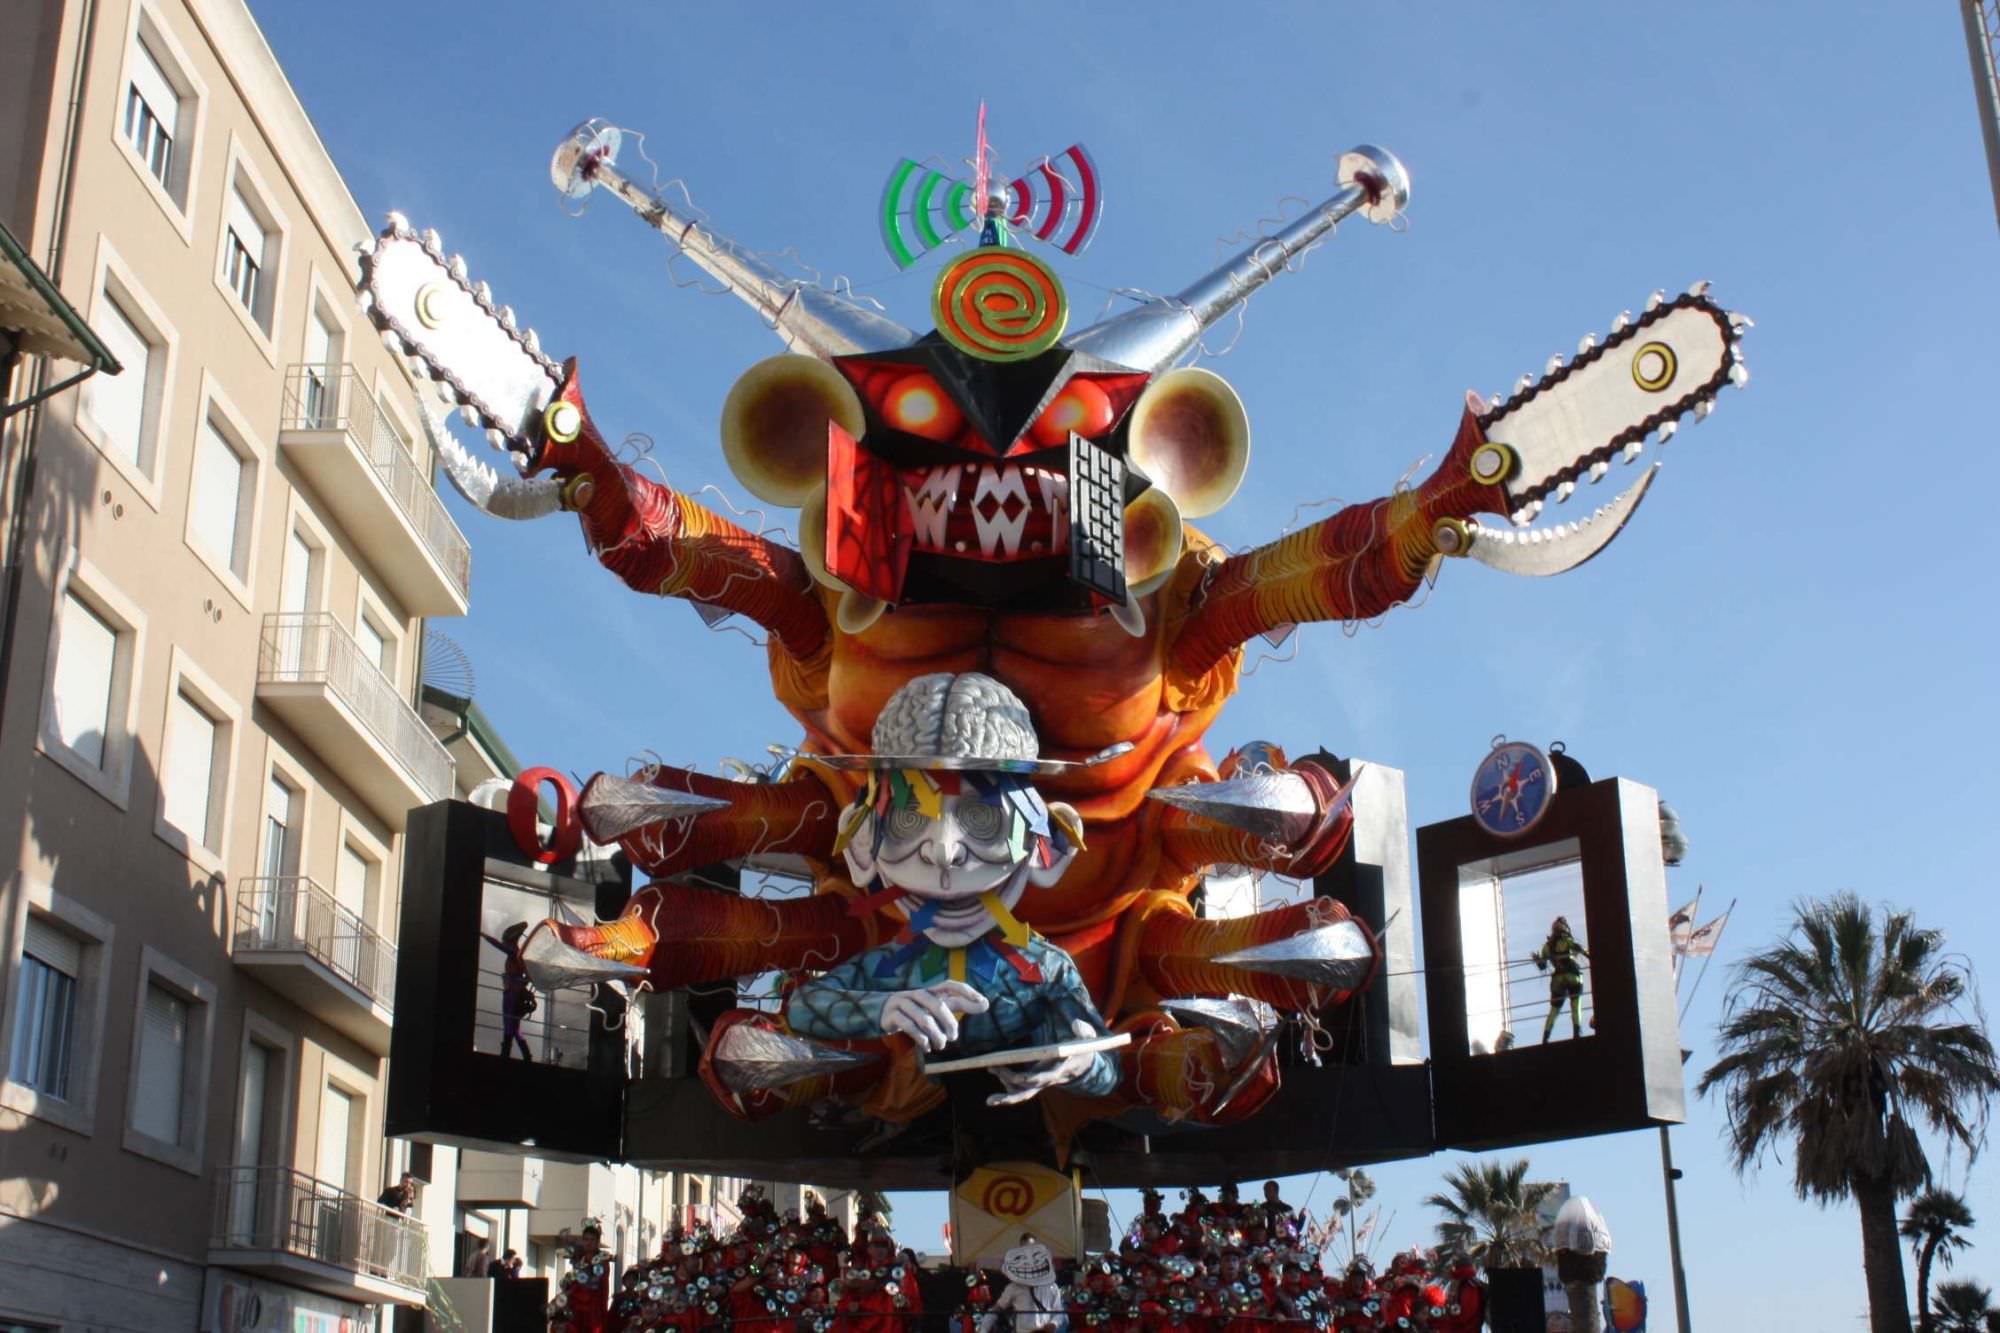 “La Regione Toscana alzi la voce e tuteli un evento come il Carnevale di Viareggio”